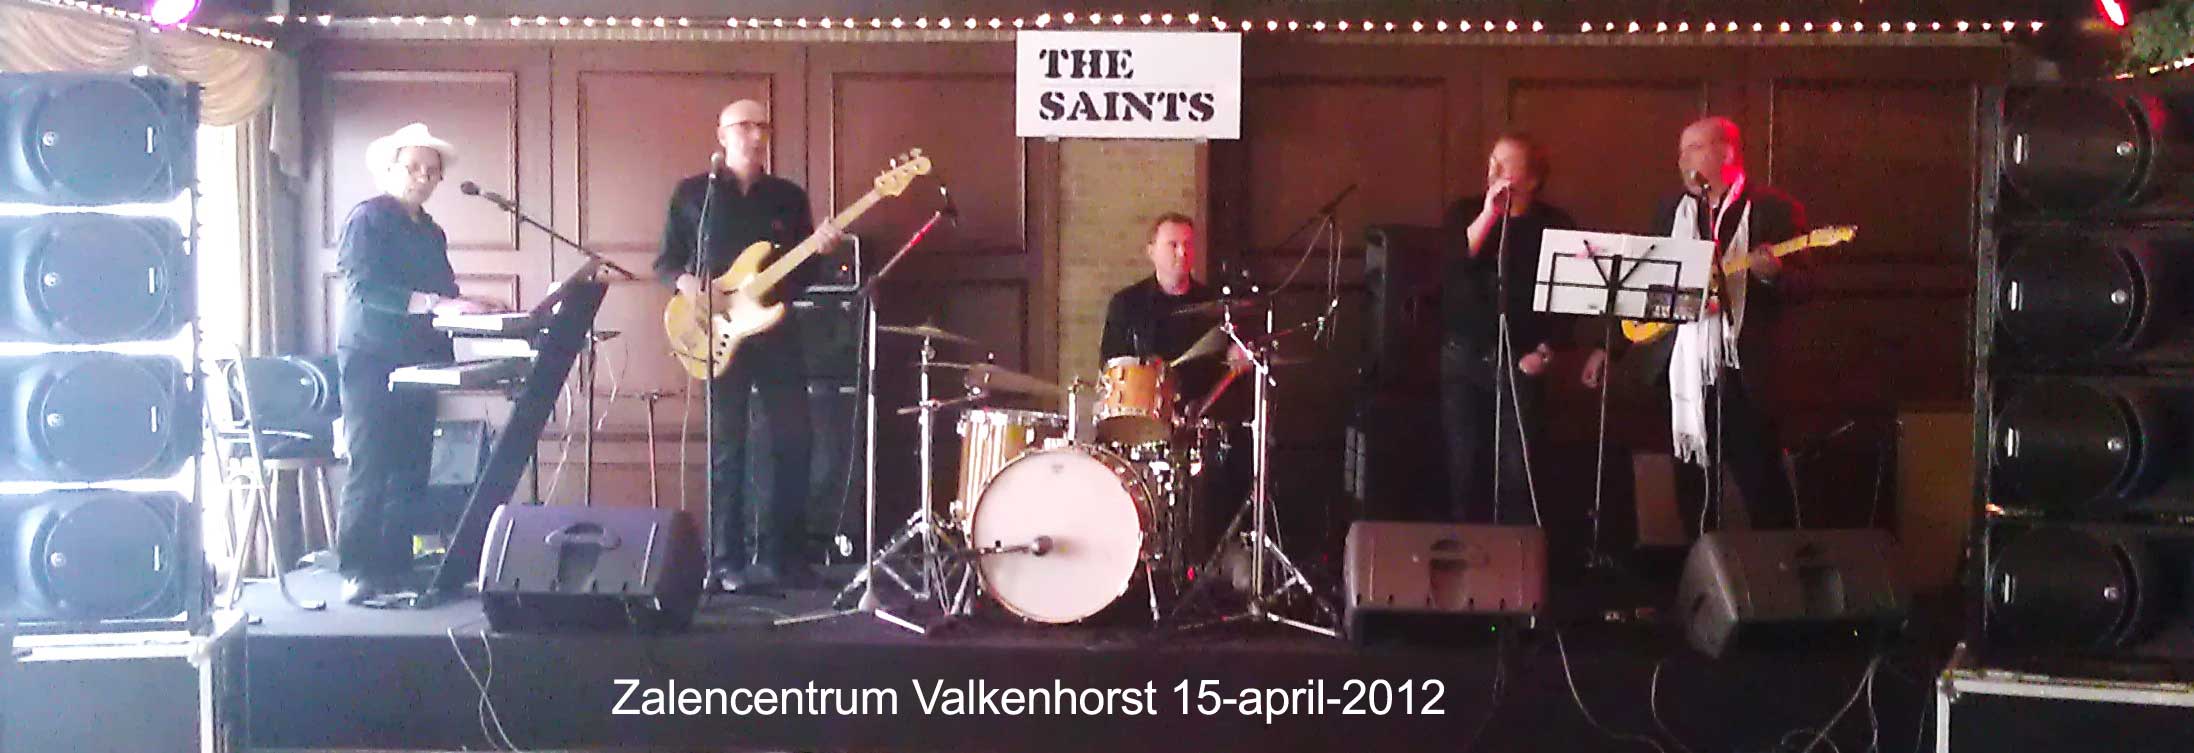 Valkenhorst 15-april-2012